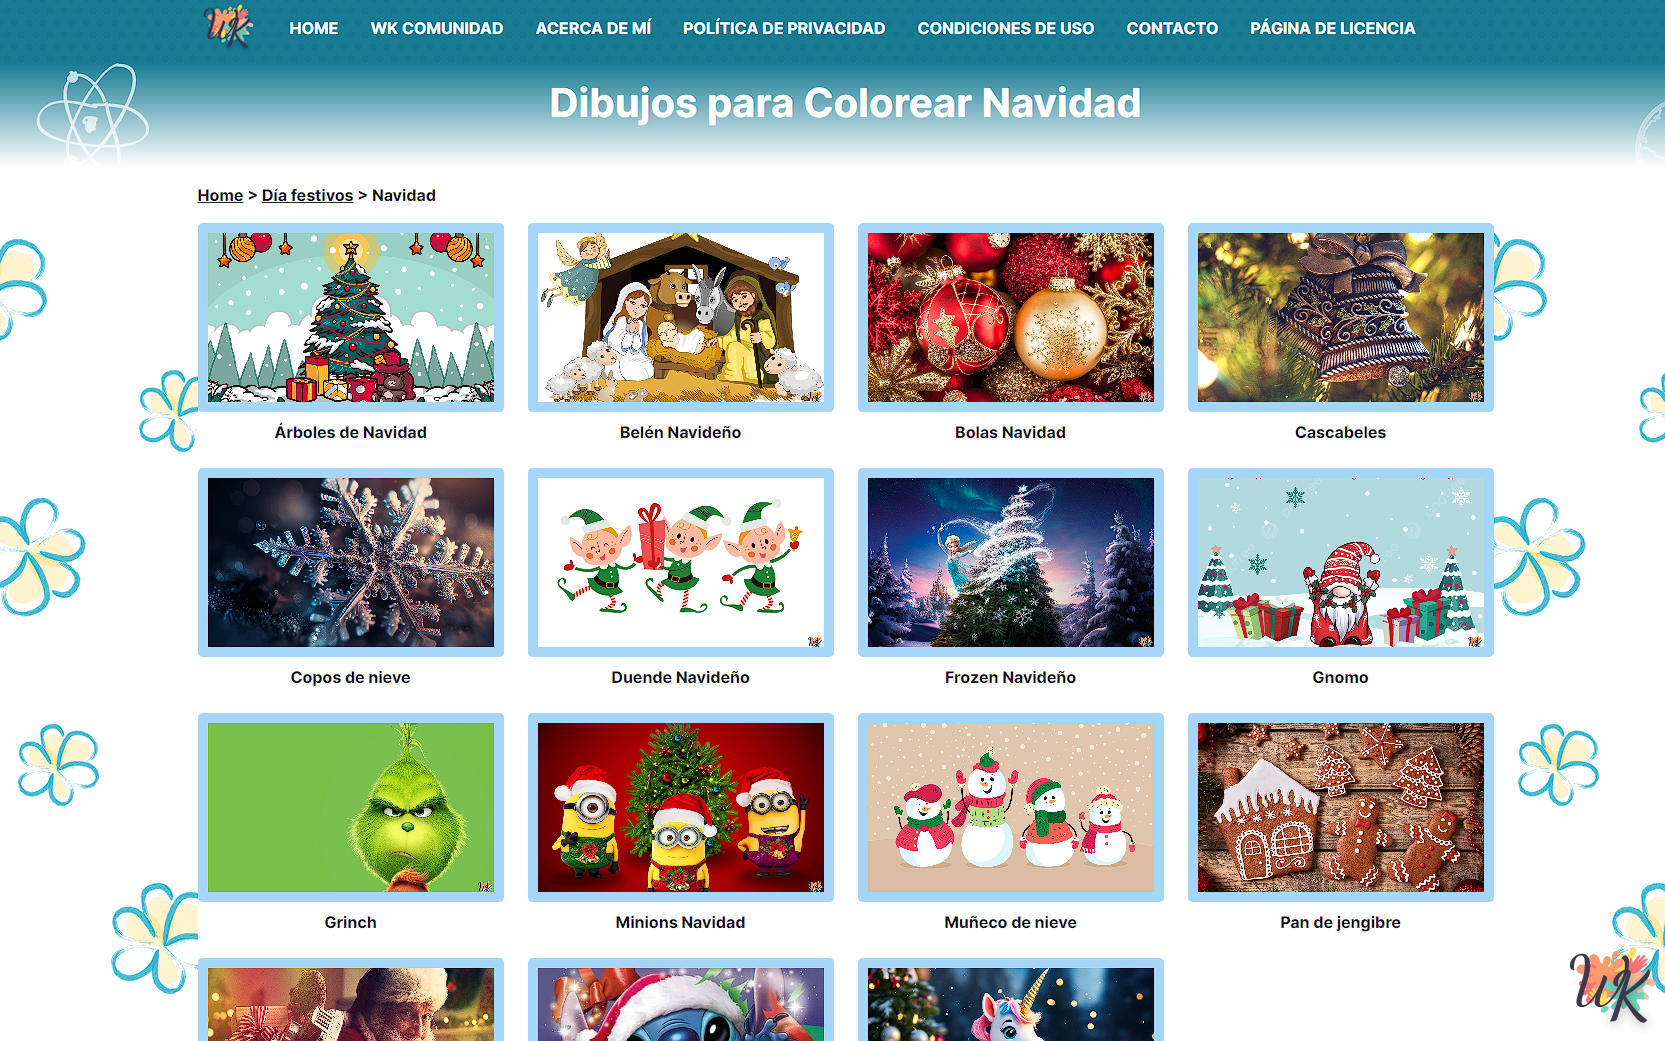 Dibujos navideños para colorear: Personajes clásicos y escenas felices